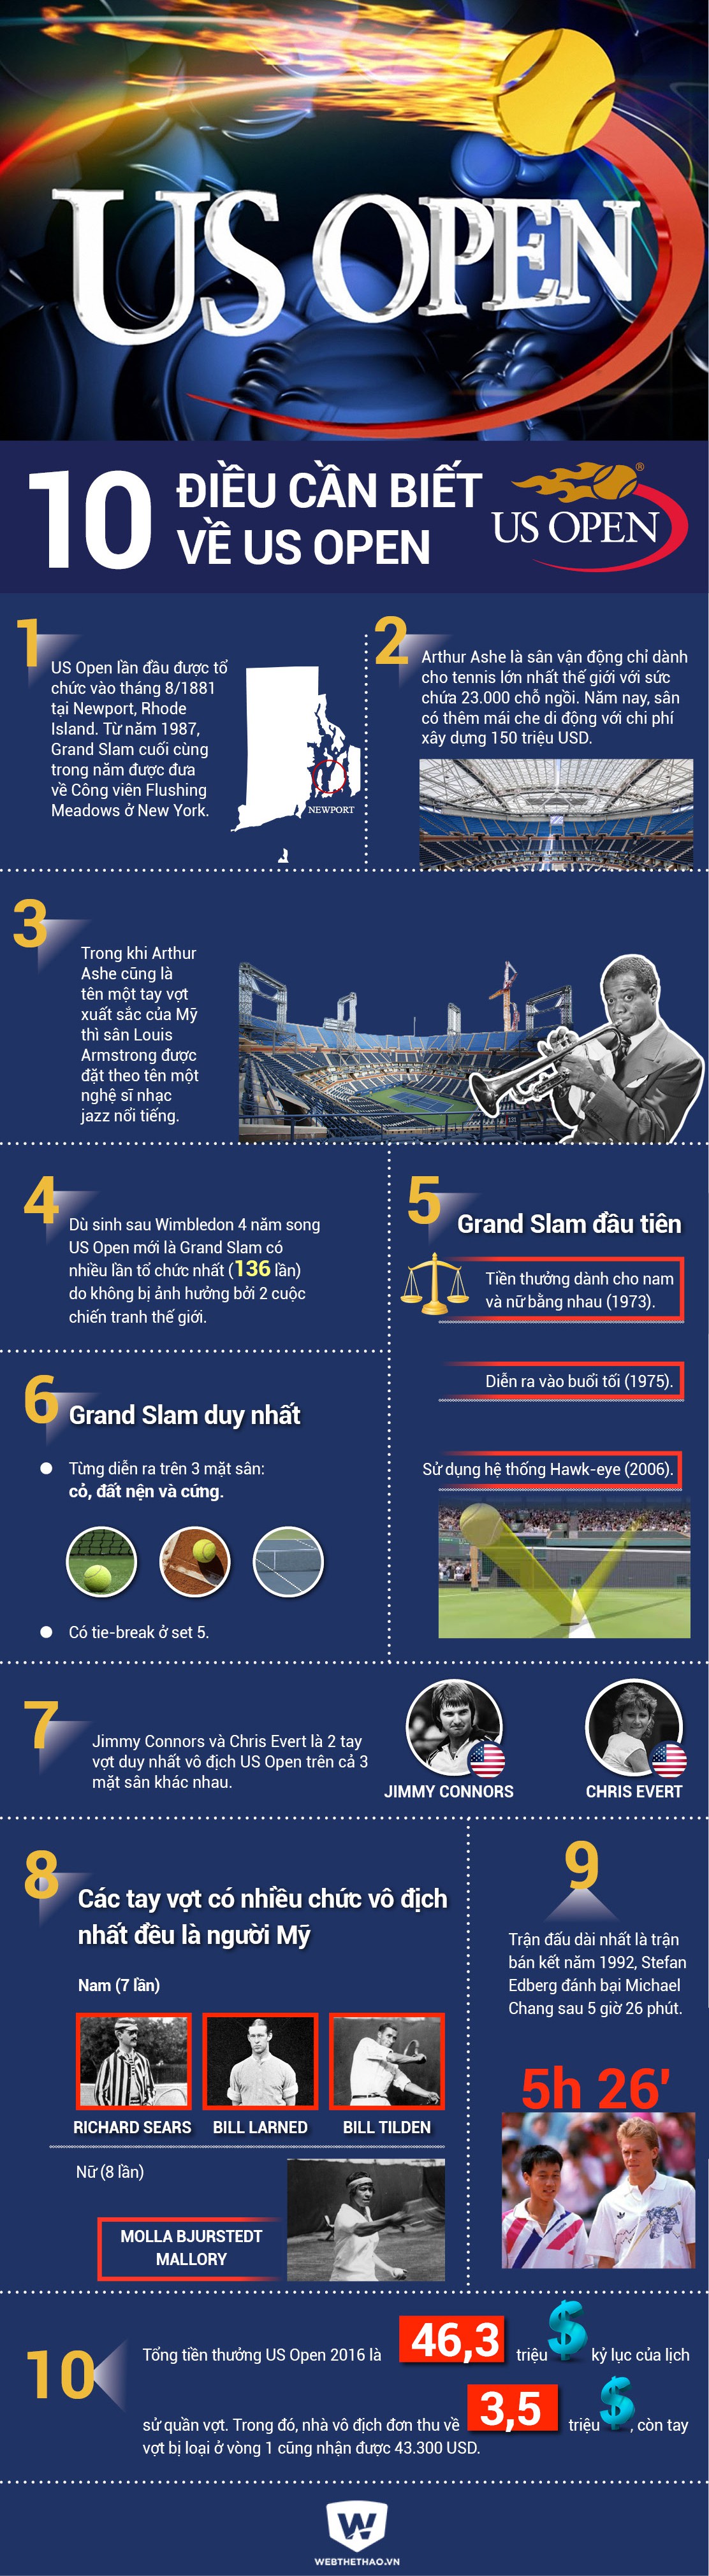 10 điều cần biết về US Open 2016, giải đấu diễn ra từ 29/08 đến 11-09